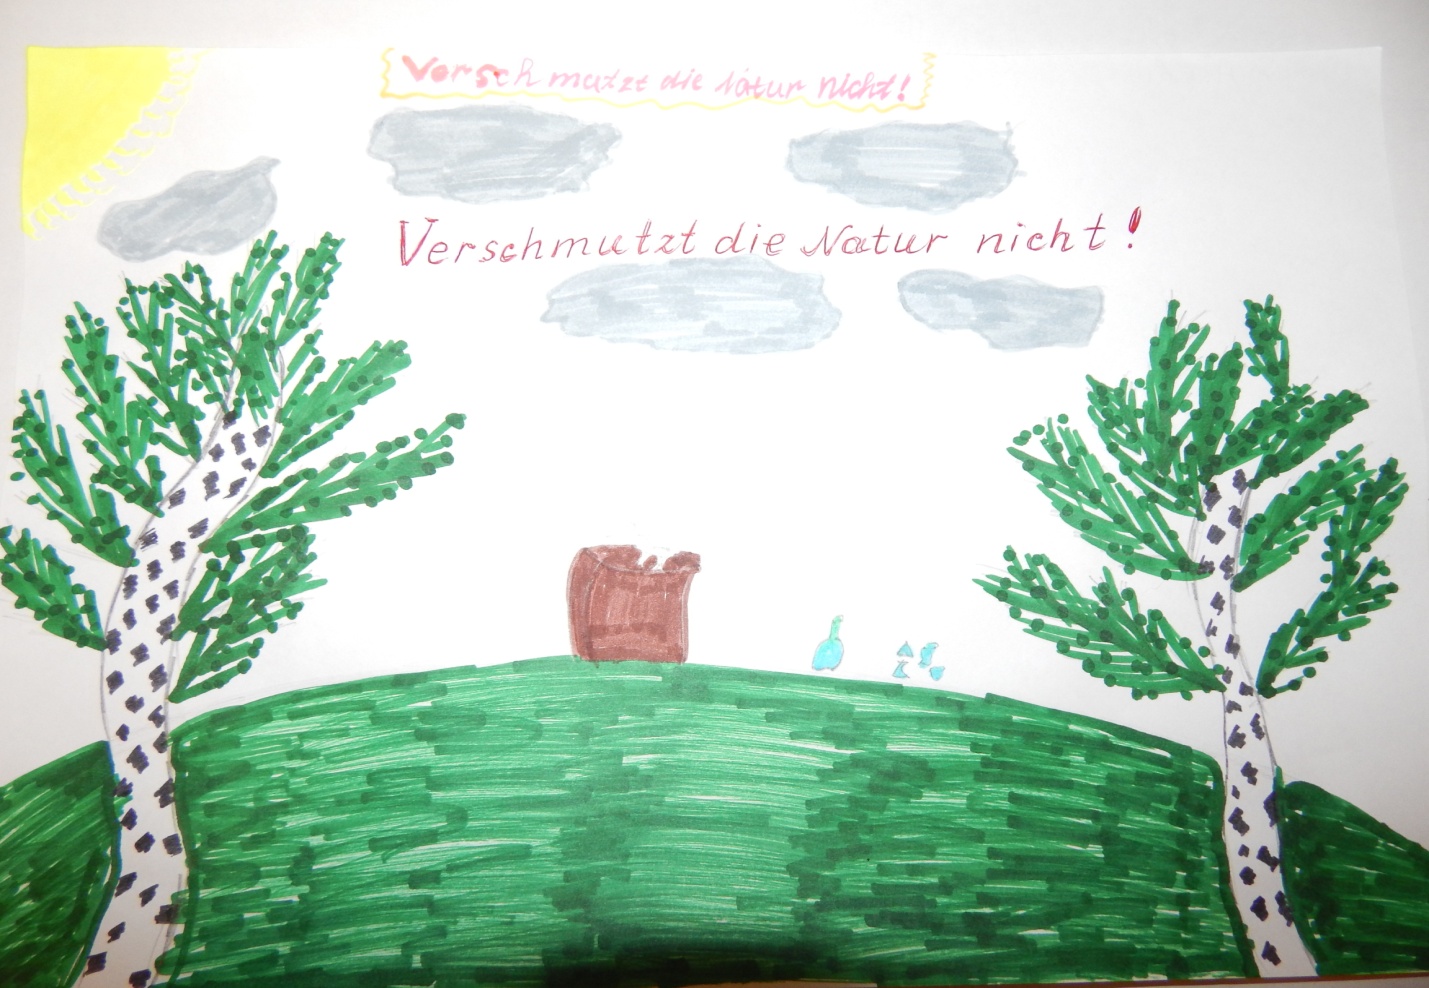 Исследовательская работа по темеРоль плаката в защите окружающей среды 7 класс, немецкий язык